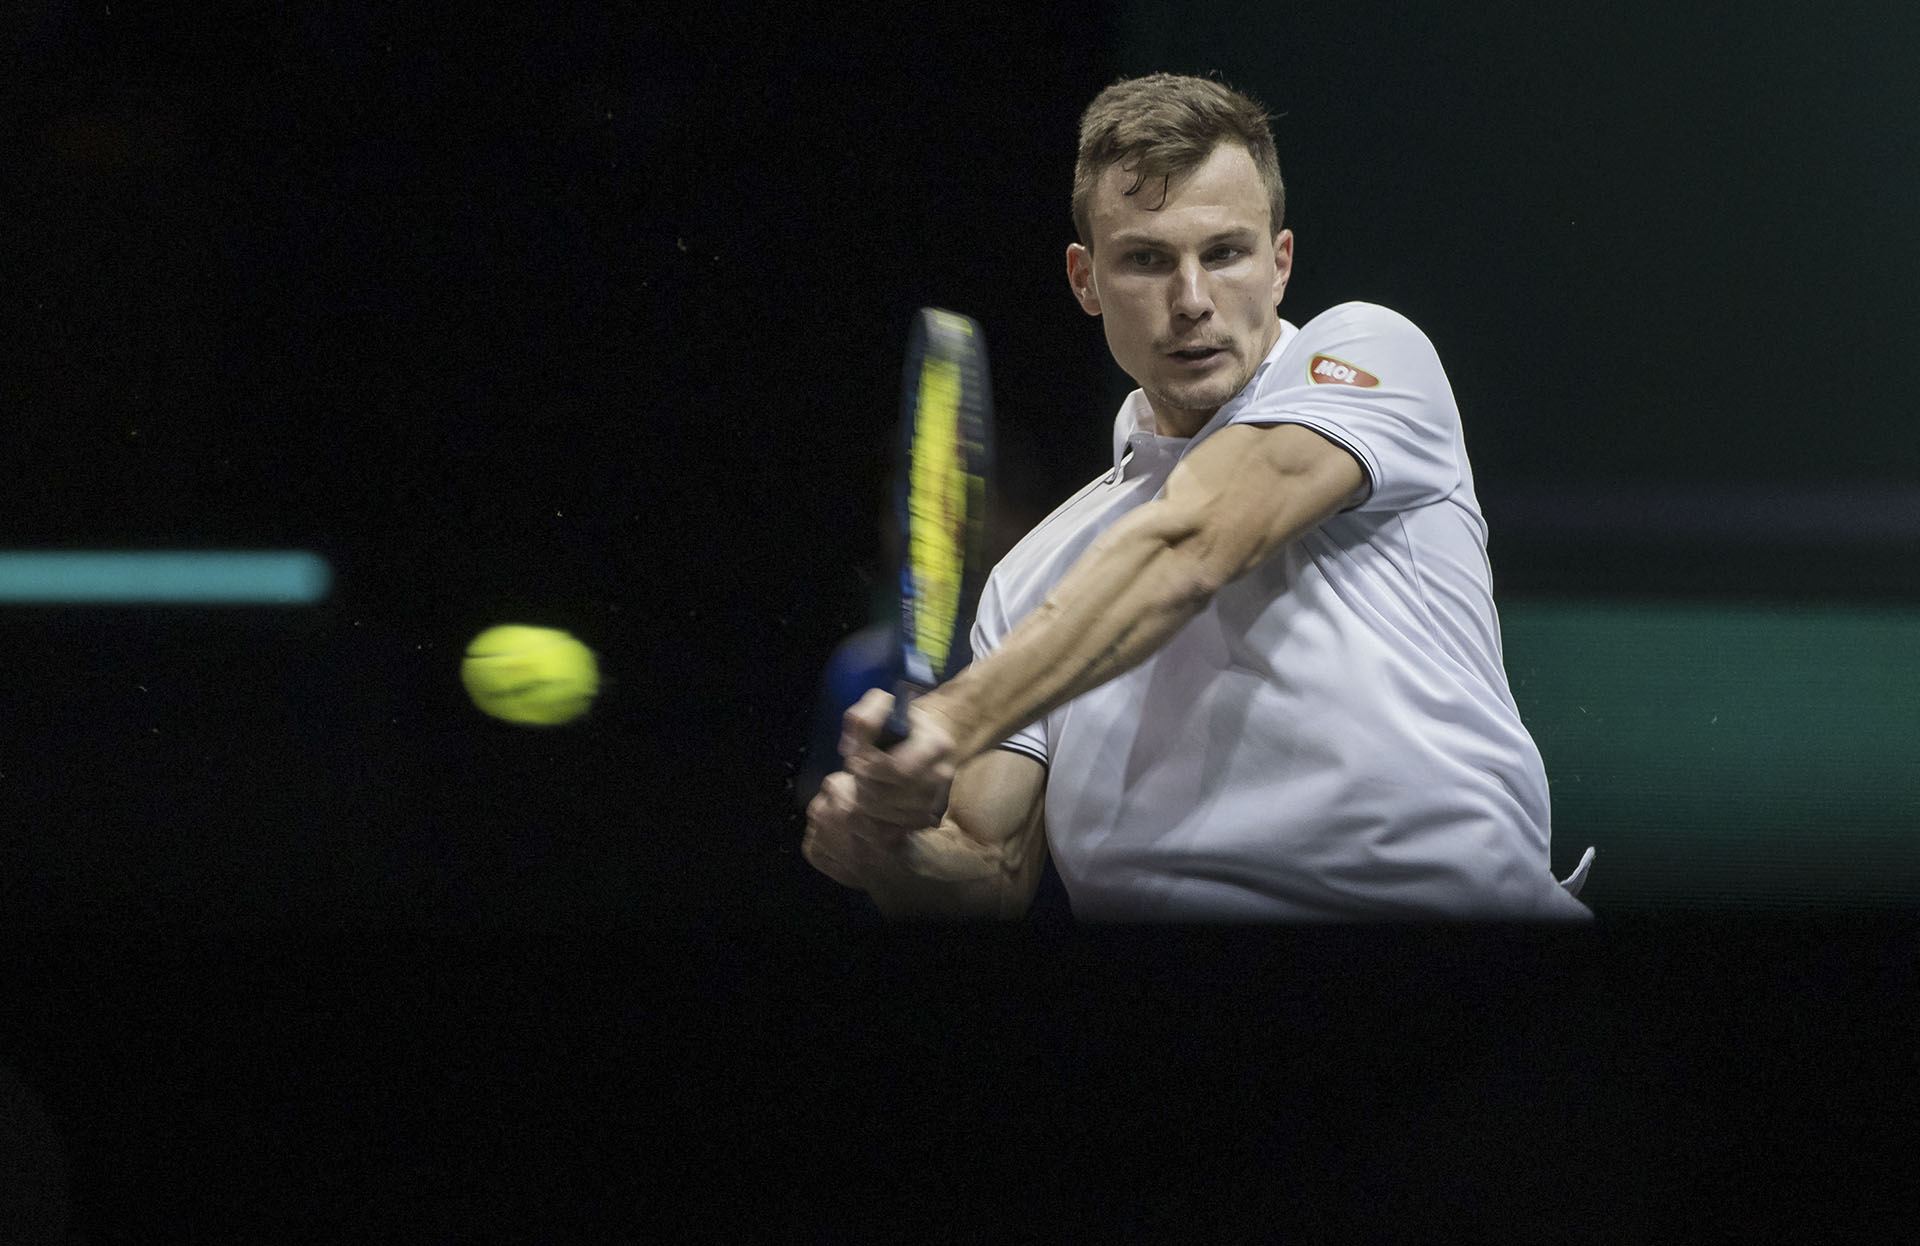 Roland Garros: Fucsovics Márton továbbjutott az első fordulóból